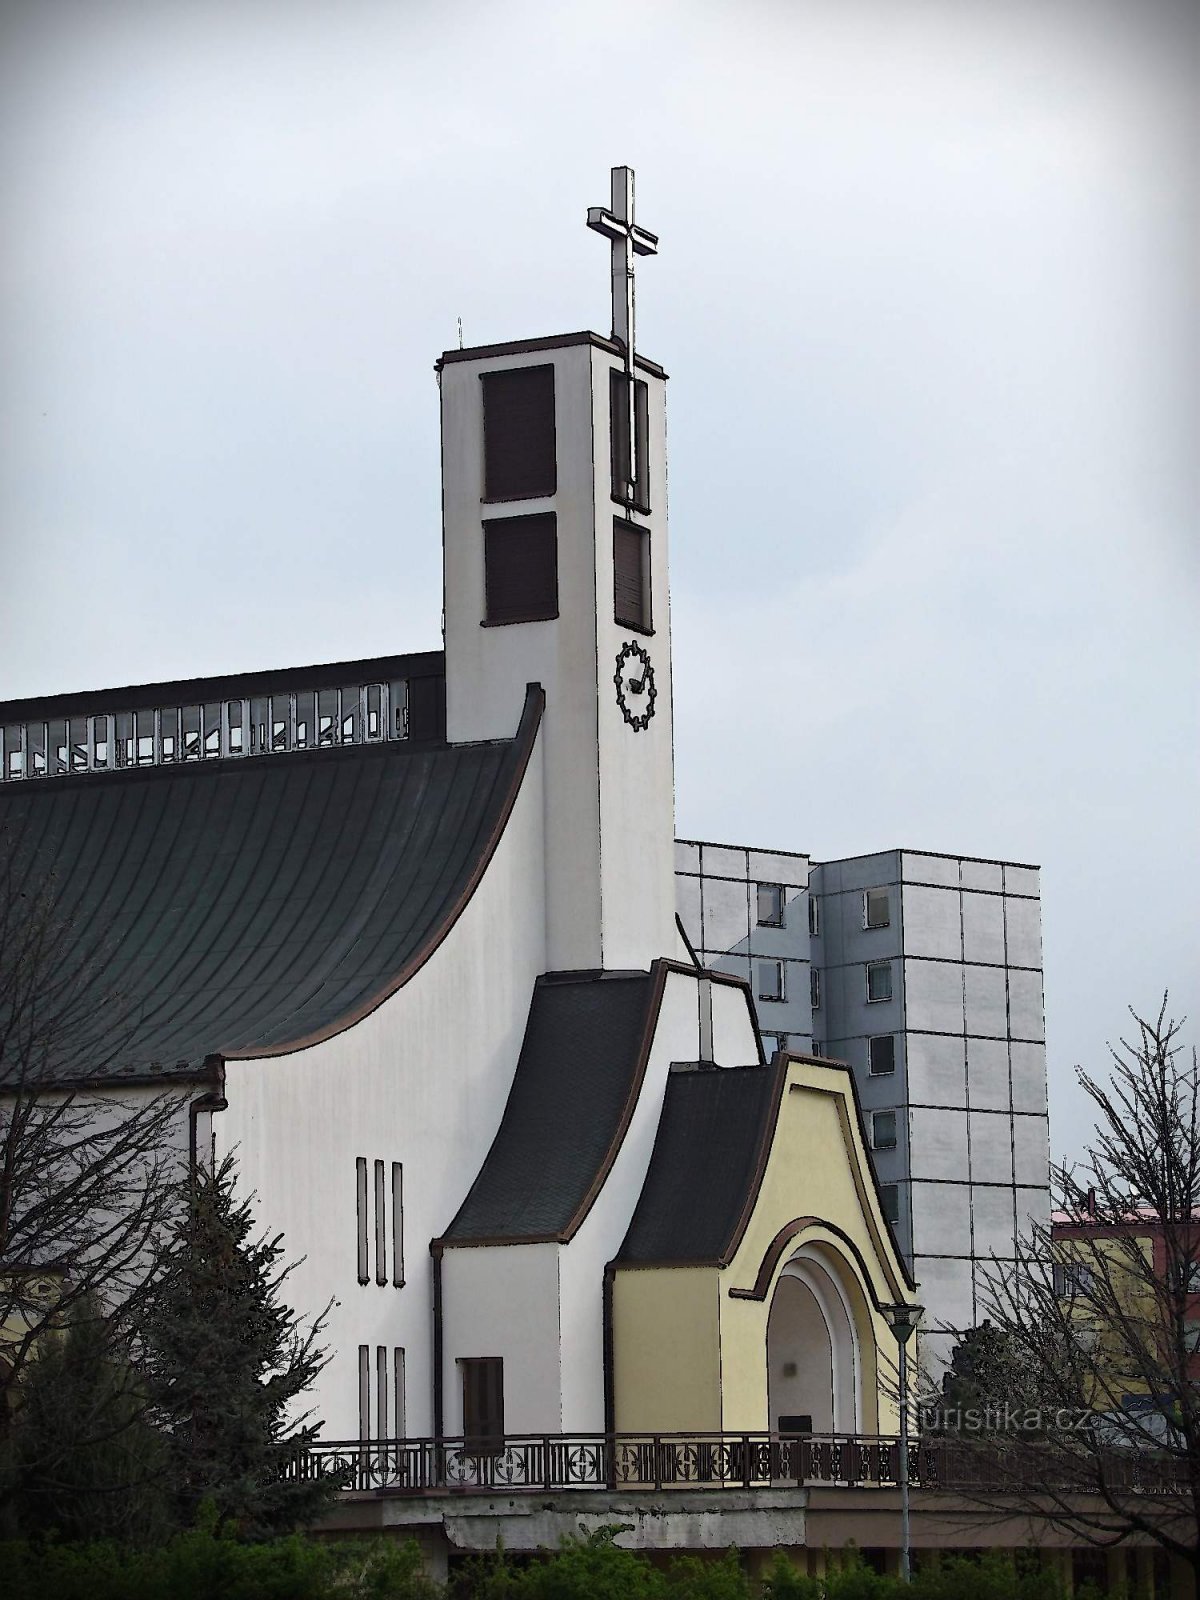 Robovske crkve